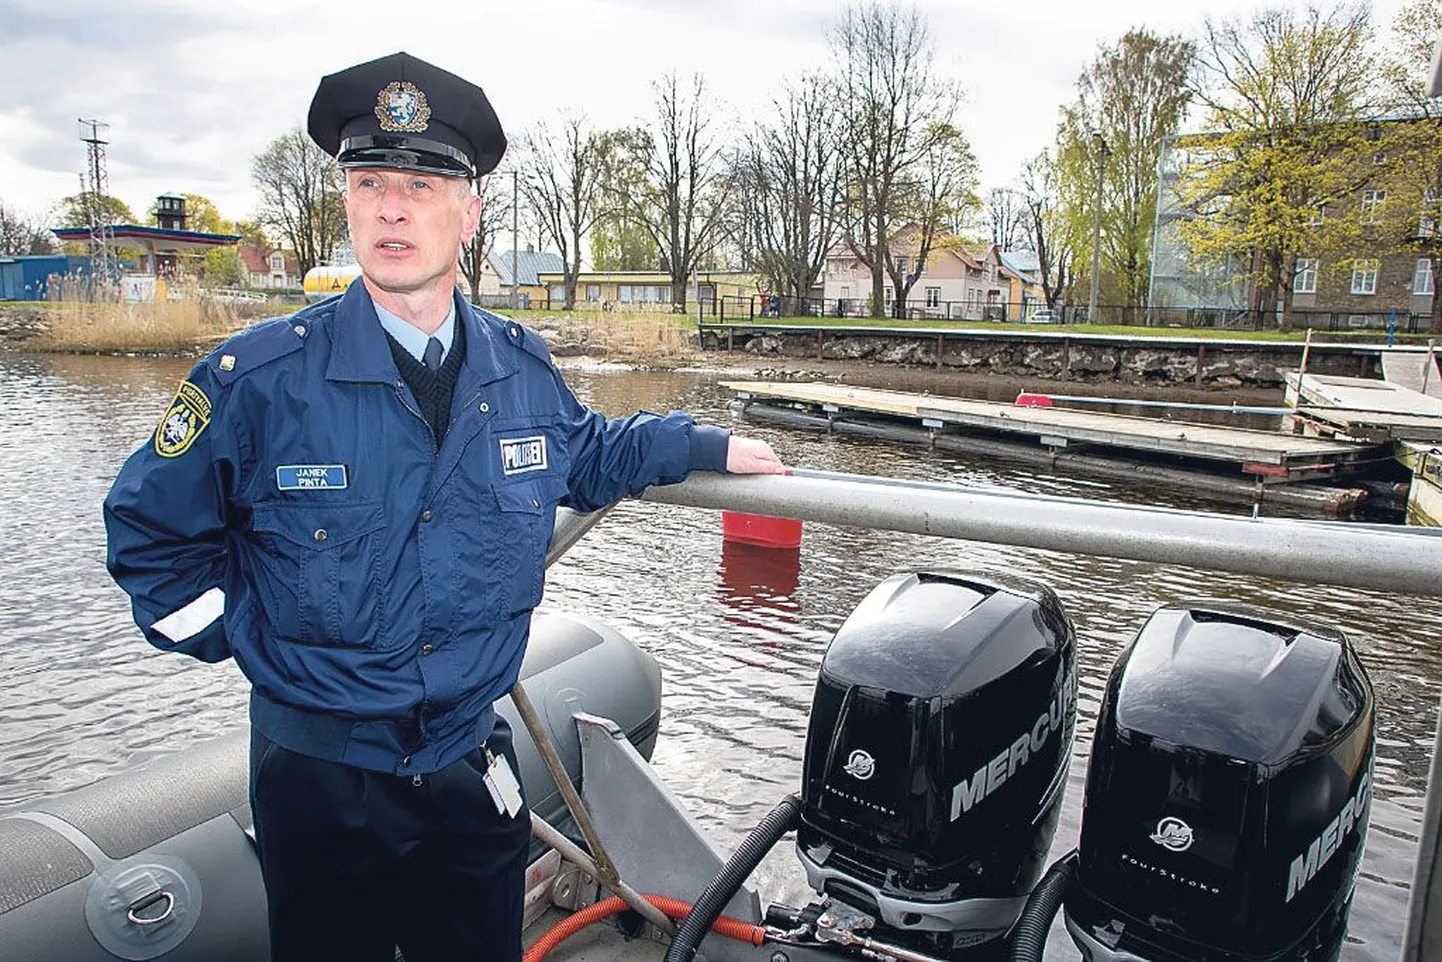 Lääne prefektuuri Pärnu kordoni juhi Janek Pinta jutu järgi on veepolitsei tänavu varakult alanud navigatsioonihooaeg kulgenud rahulikult.